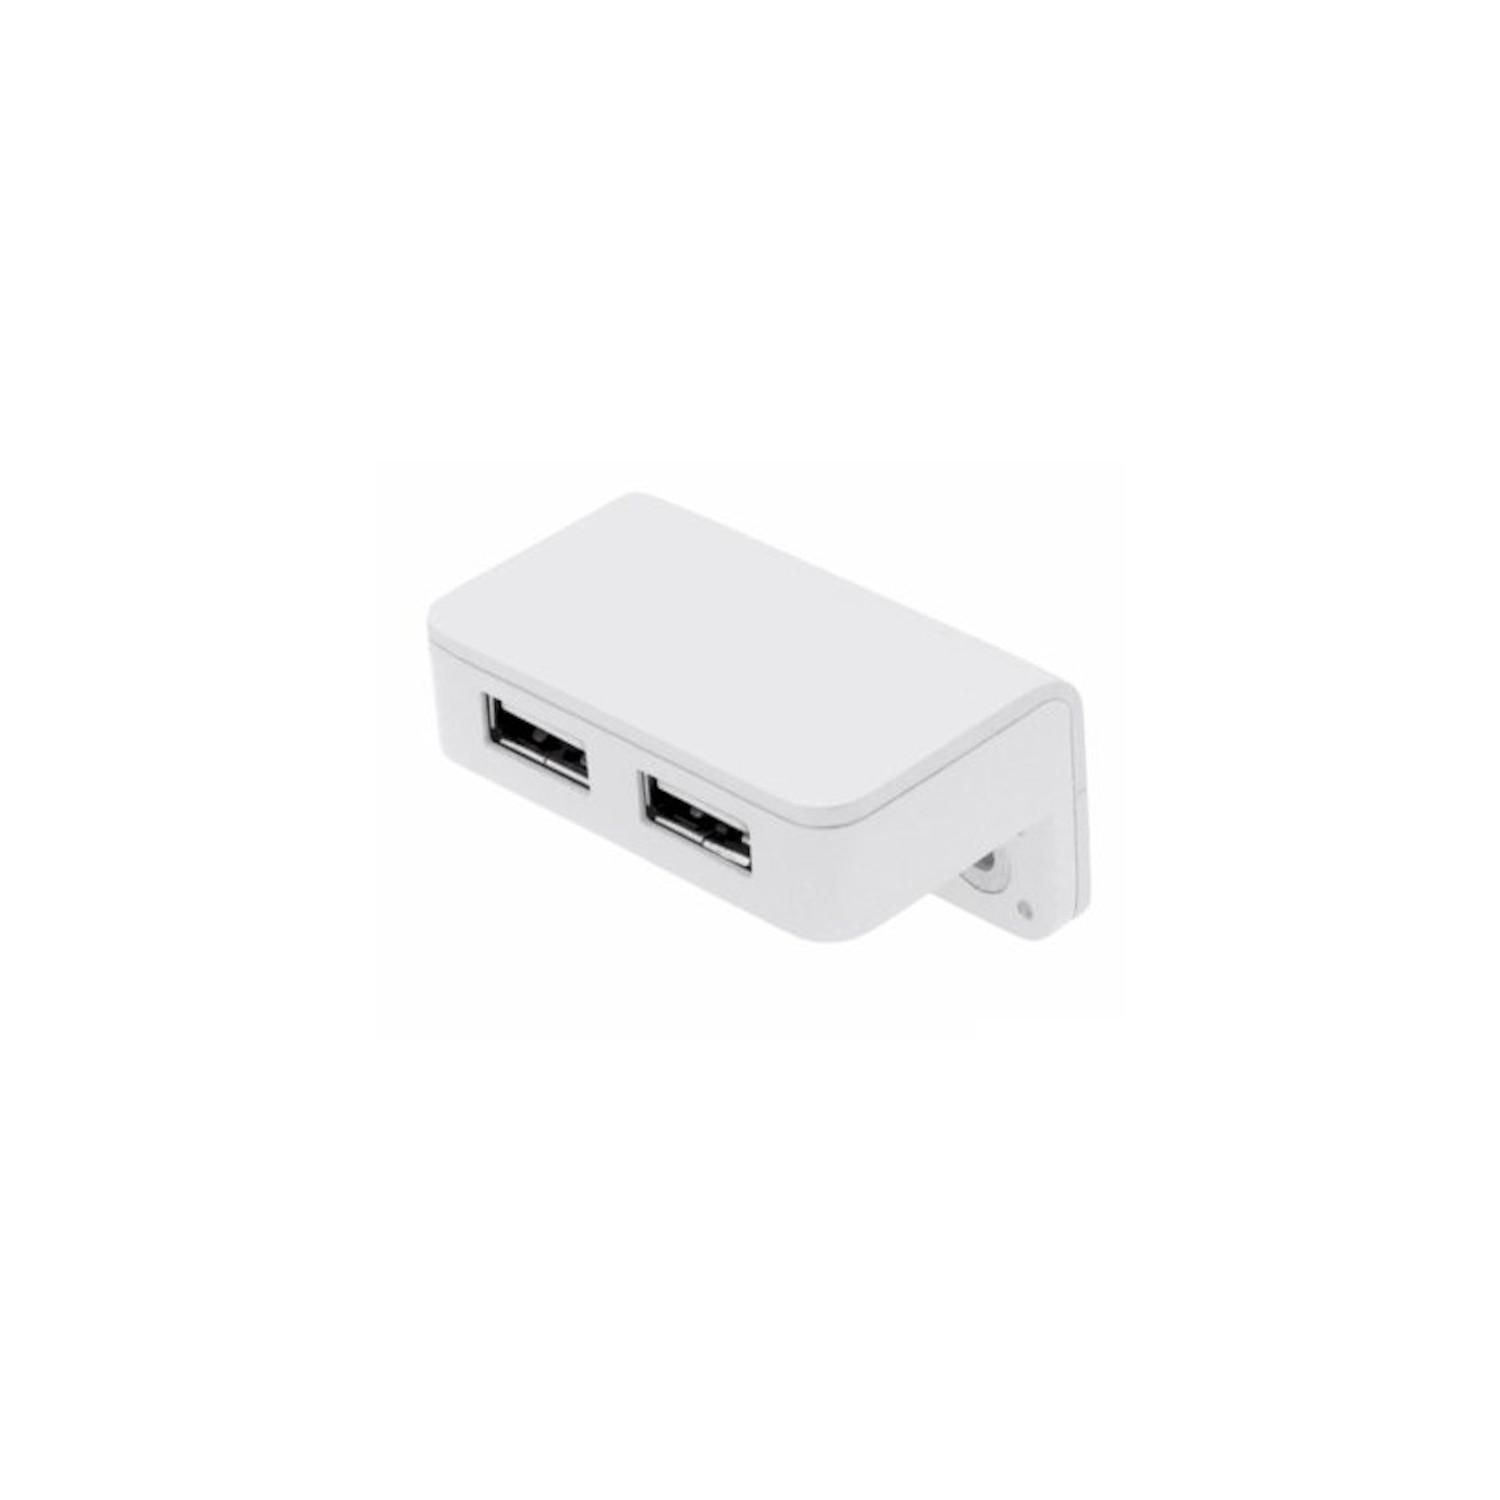 USB/T CHARGER BIANCO | Doppia presa USB da appoggio | Caricatore USB 